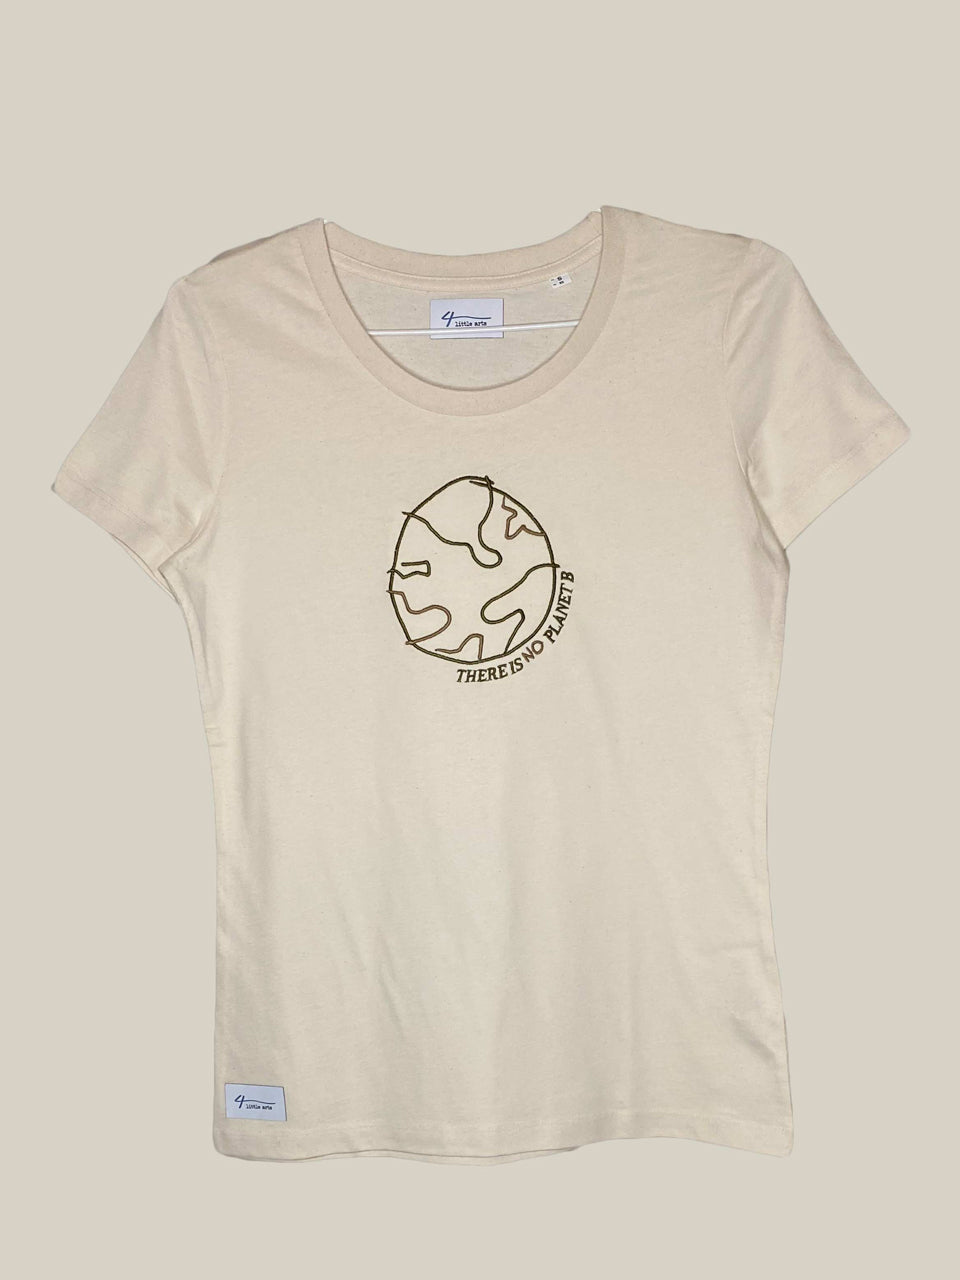 4littlearts Damen-T-Shirt mit Stickerei 'There is no planet b'. Das T-Shirt wurde nachhaltig und fair produziert.